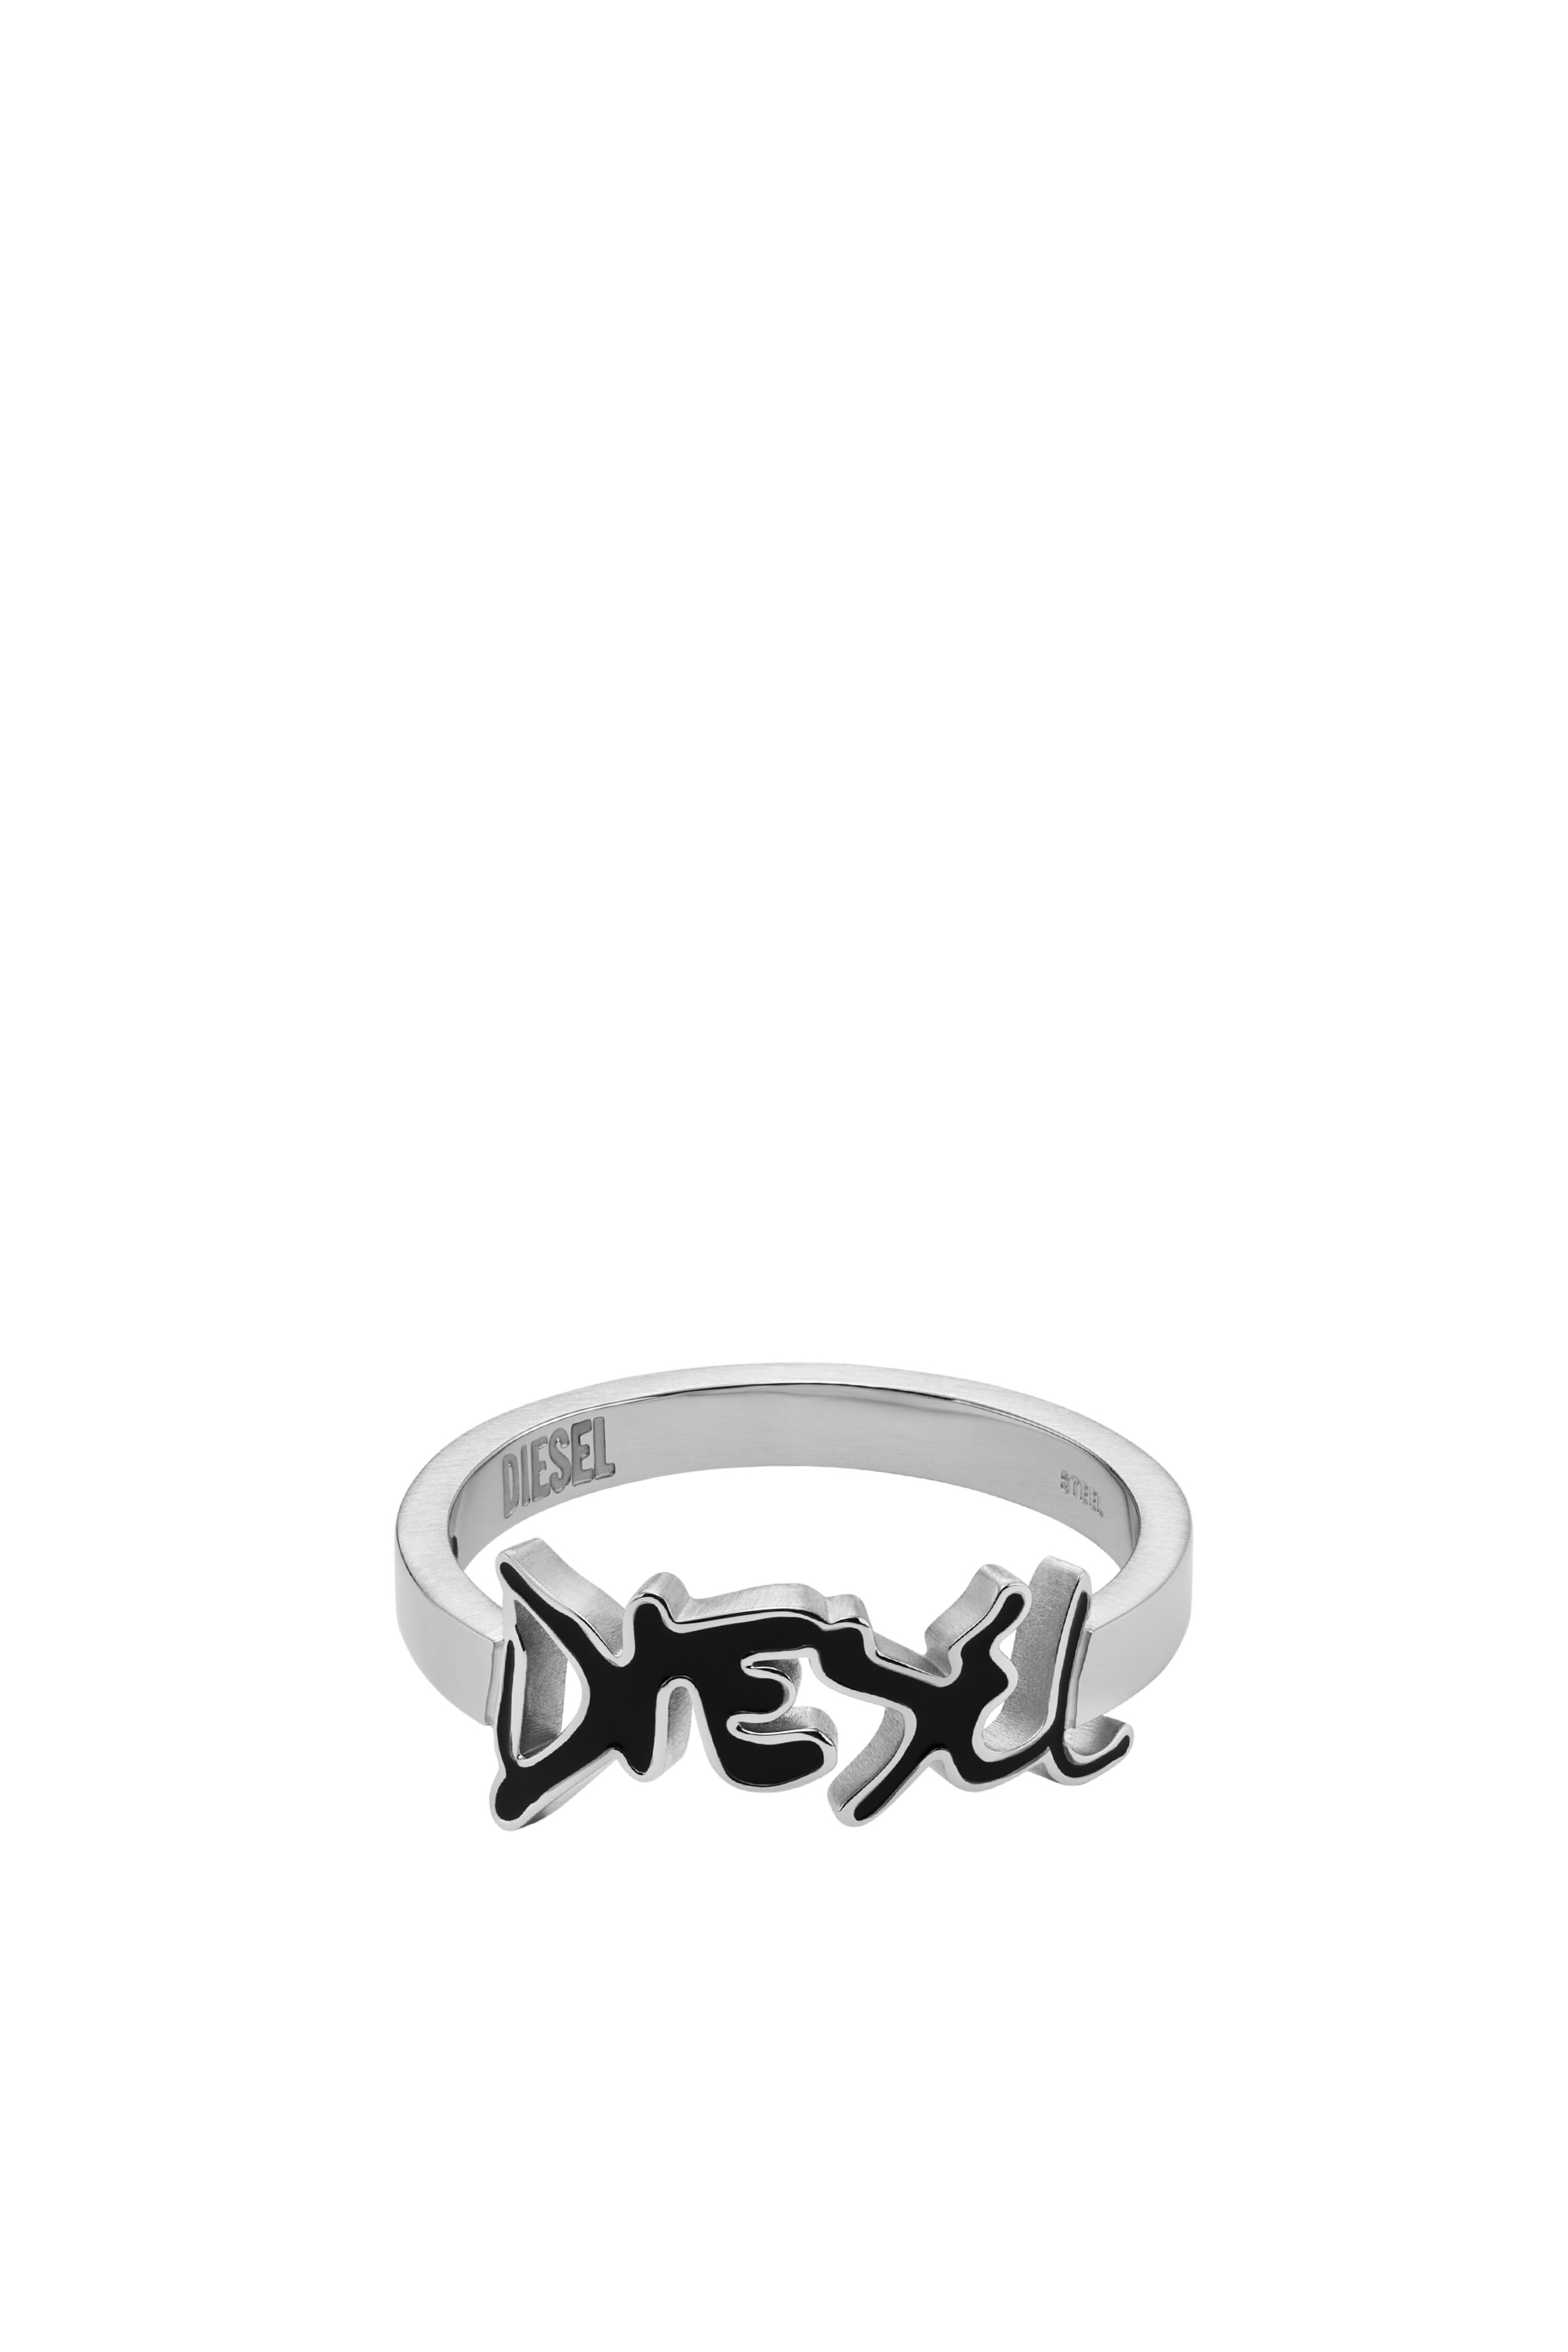 Diesel - DX1465, Argento/Nero - Image 2